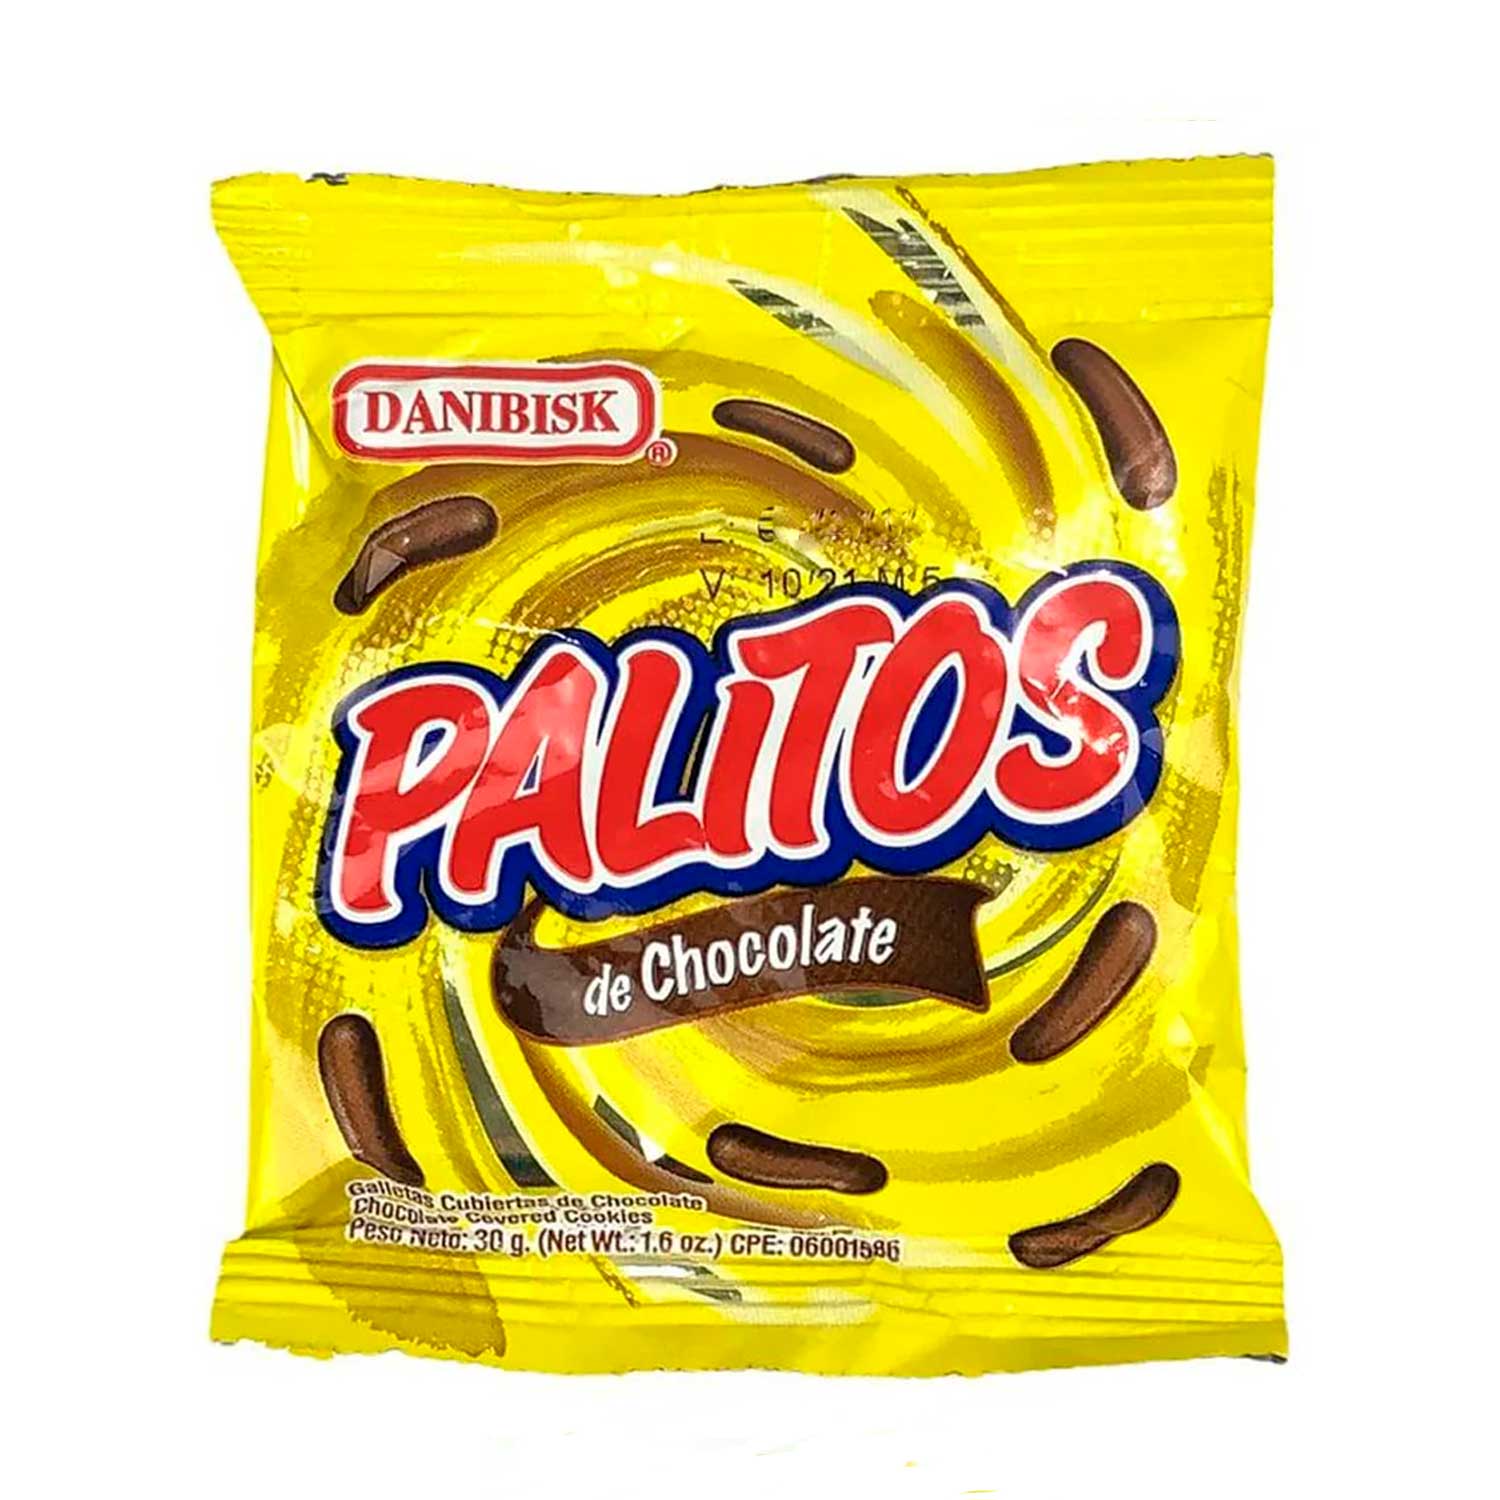 Galletas Danibisk Palitos Chocolate. 30 g